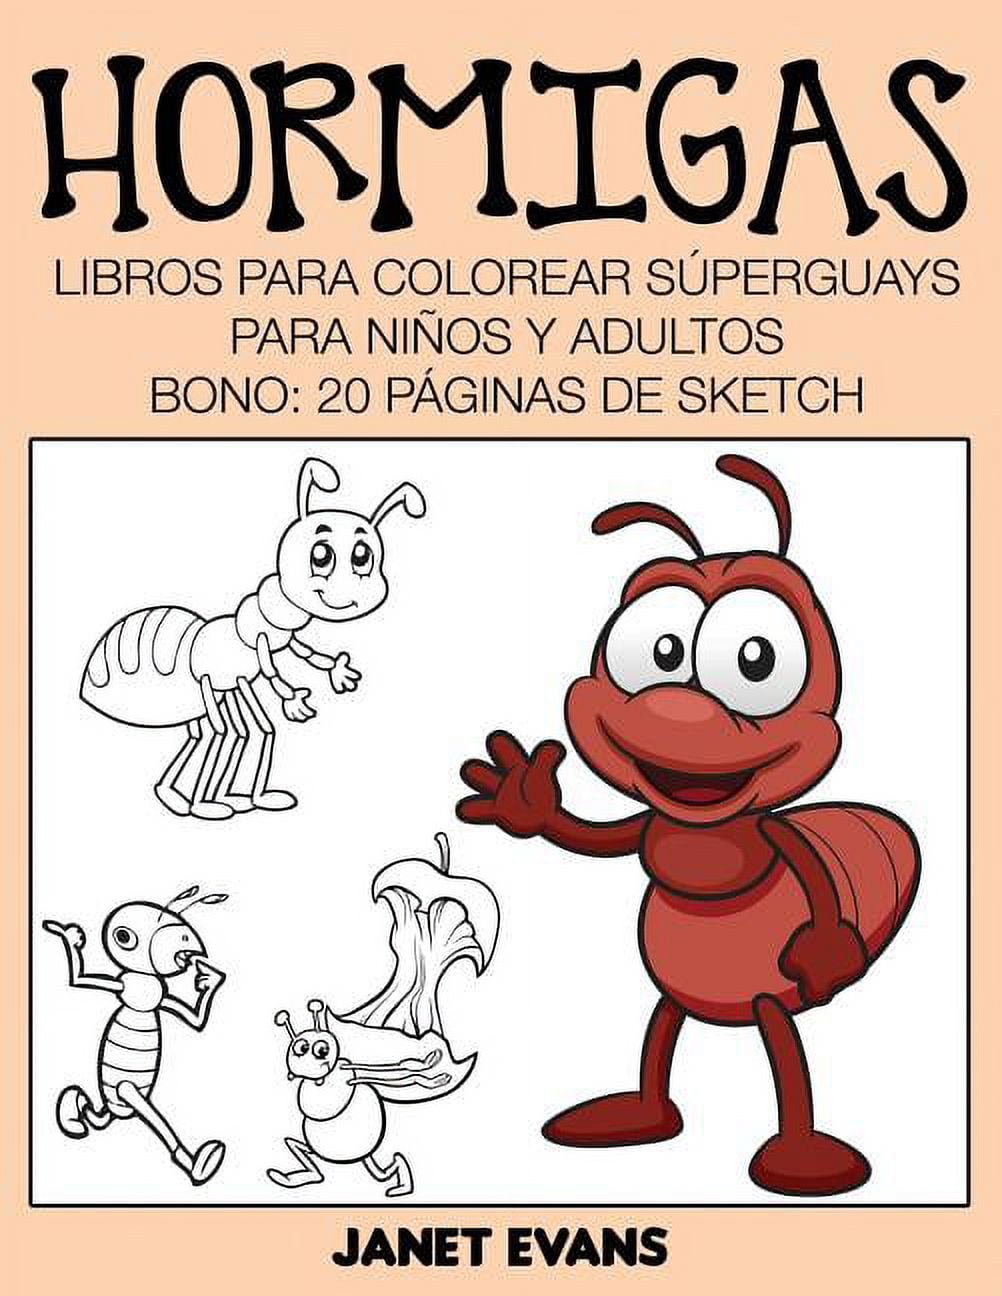 Hormigas: Libros Para Colorear Superguays Para Ninos y Adultos (Bono: 20 Paginas de Sketch) [Book]